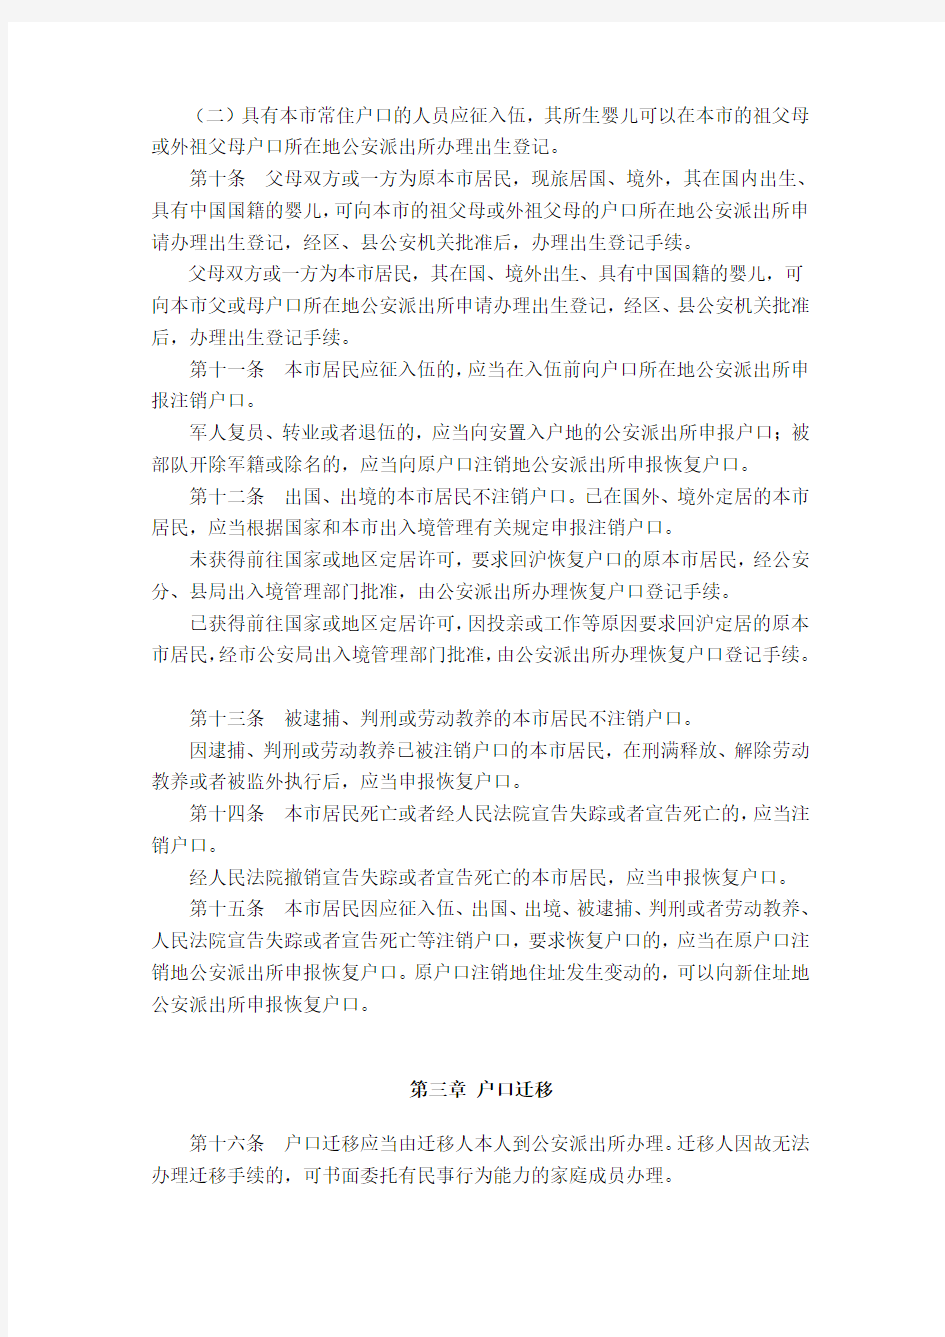 上海市户籍管理规定